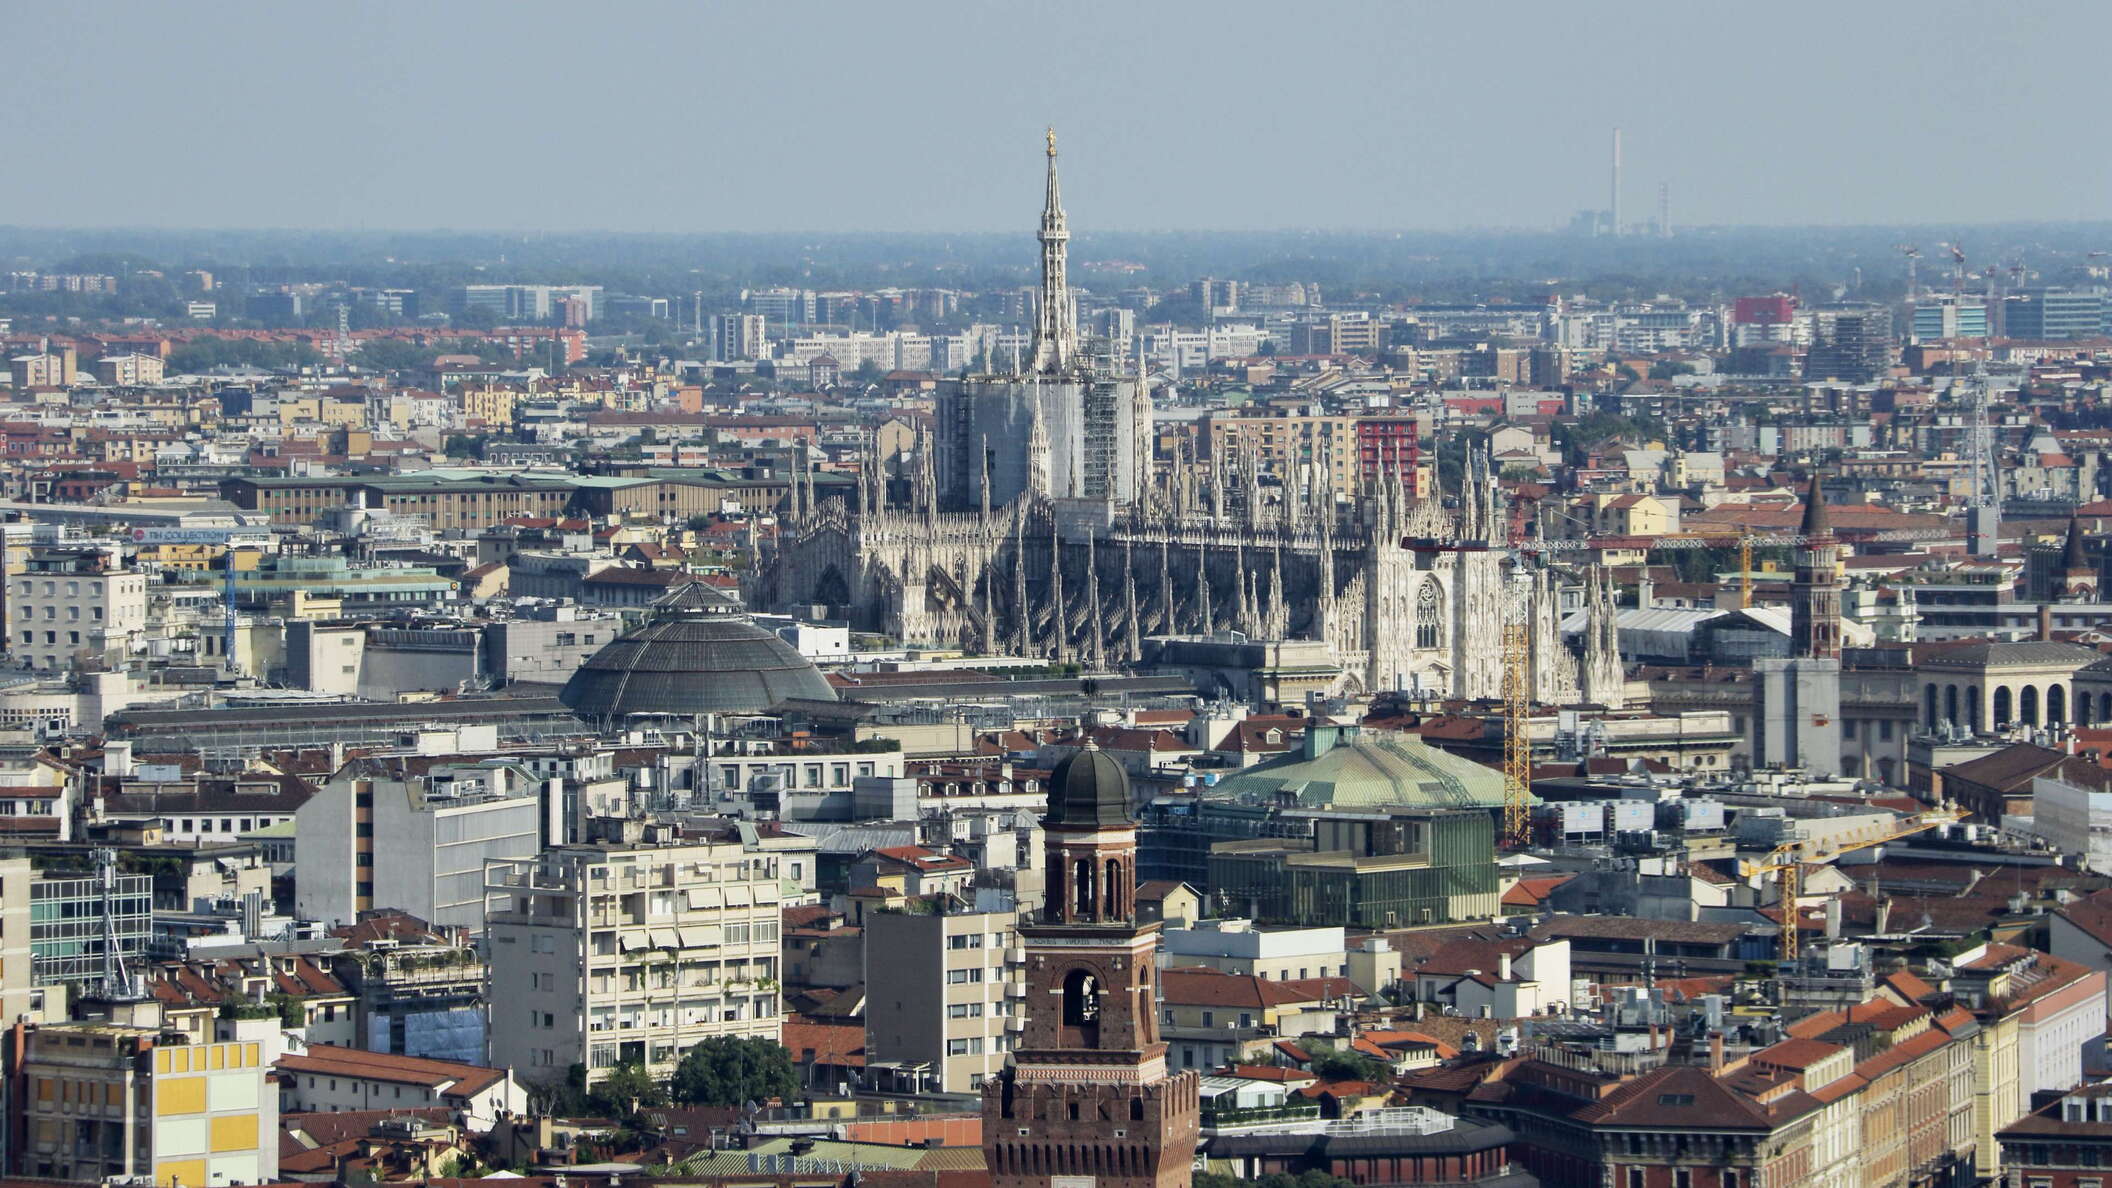 Milano | City centre with Duomo di Milano